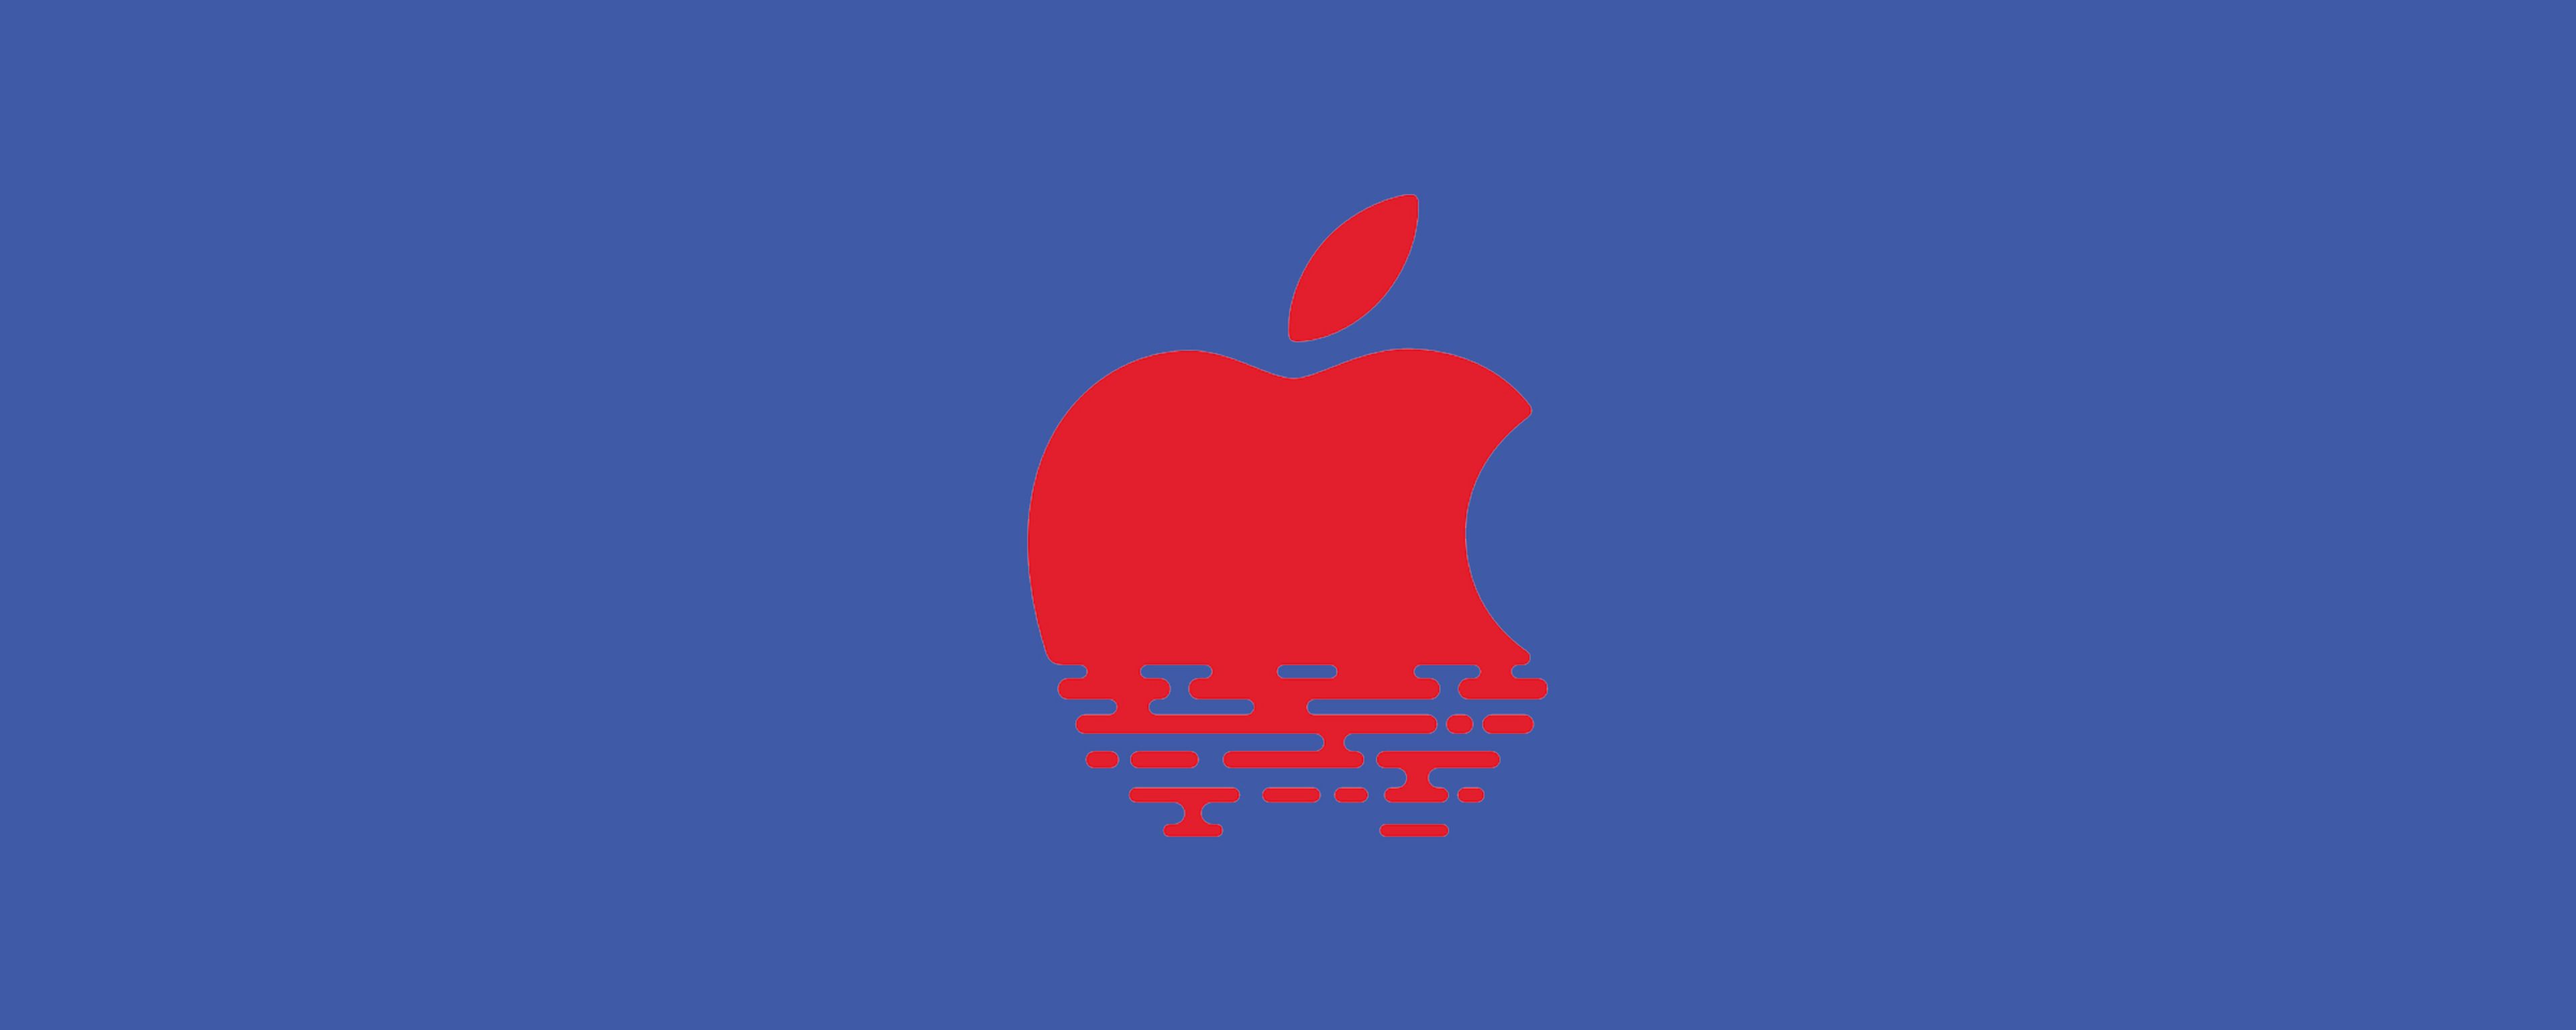 apple logo singapur